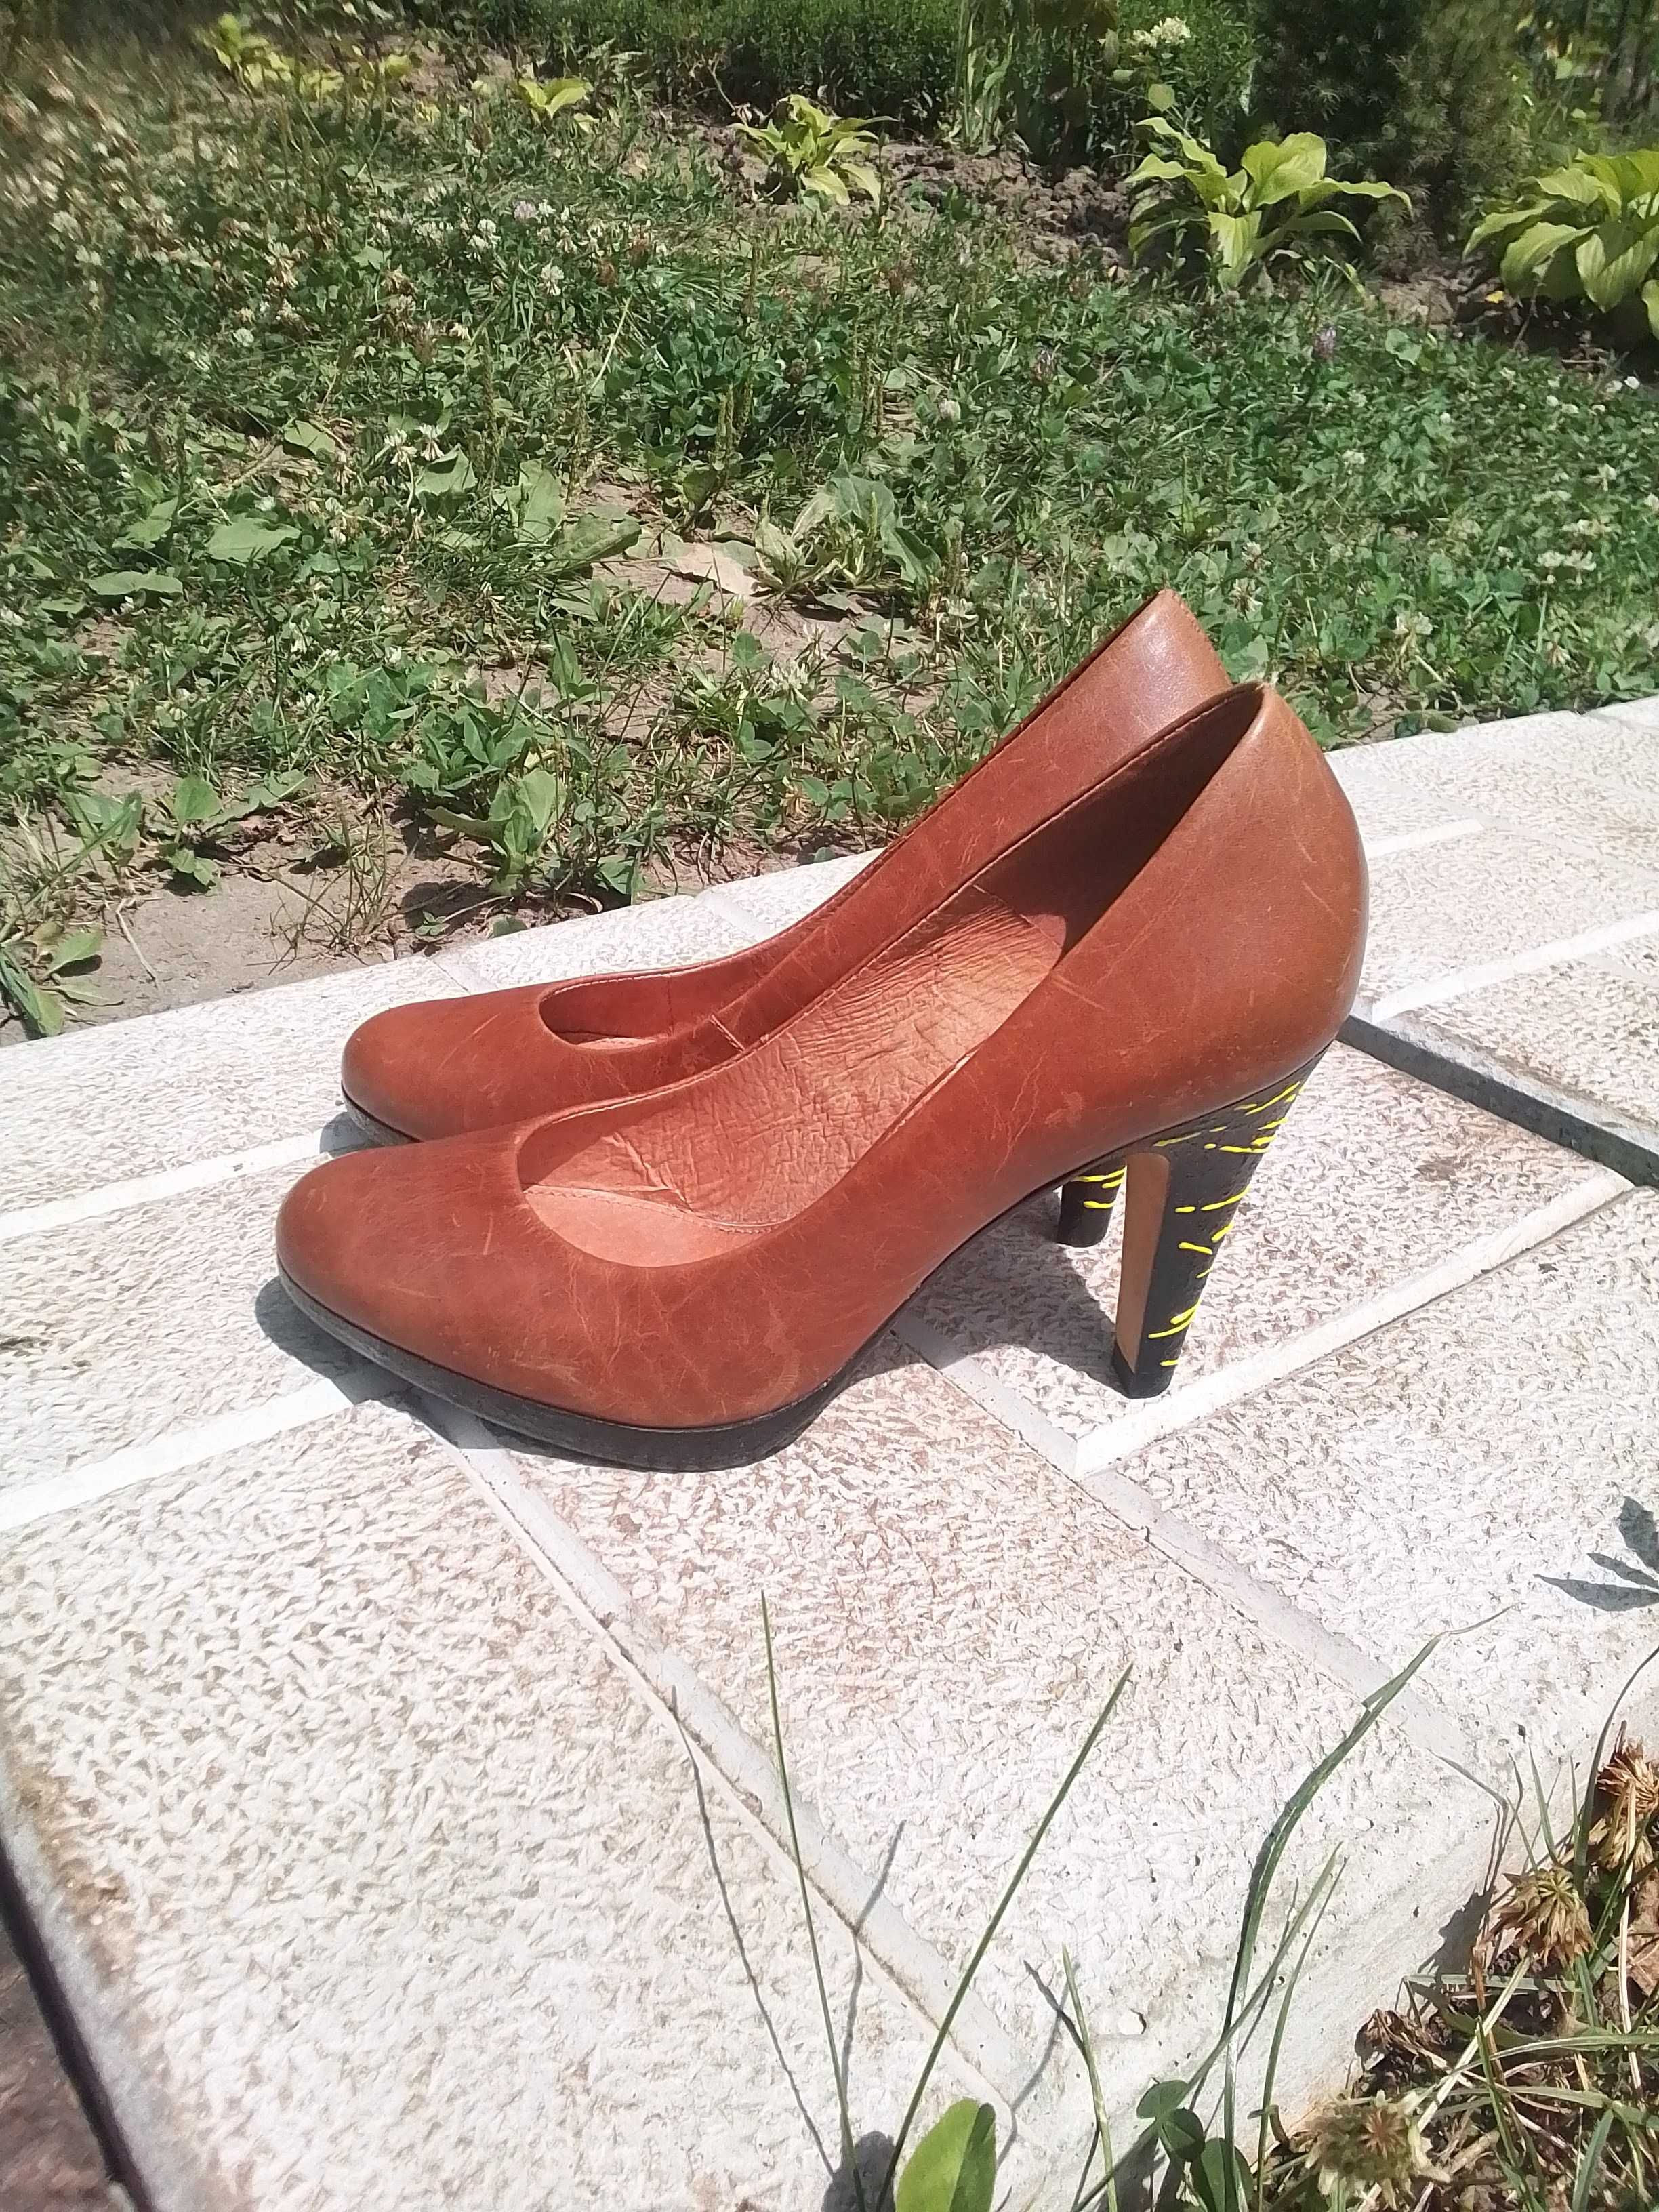 Женские туфли 36 размер в отличном состоянии, произв. Бразилия